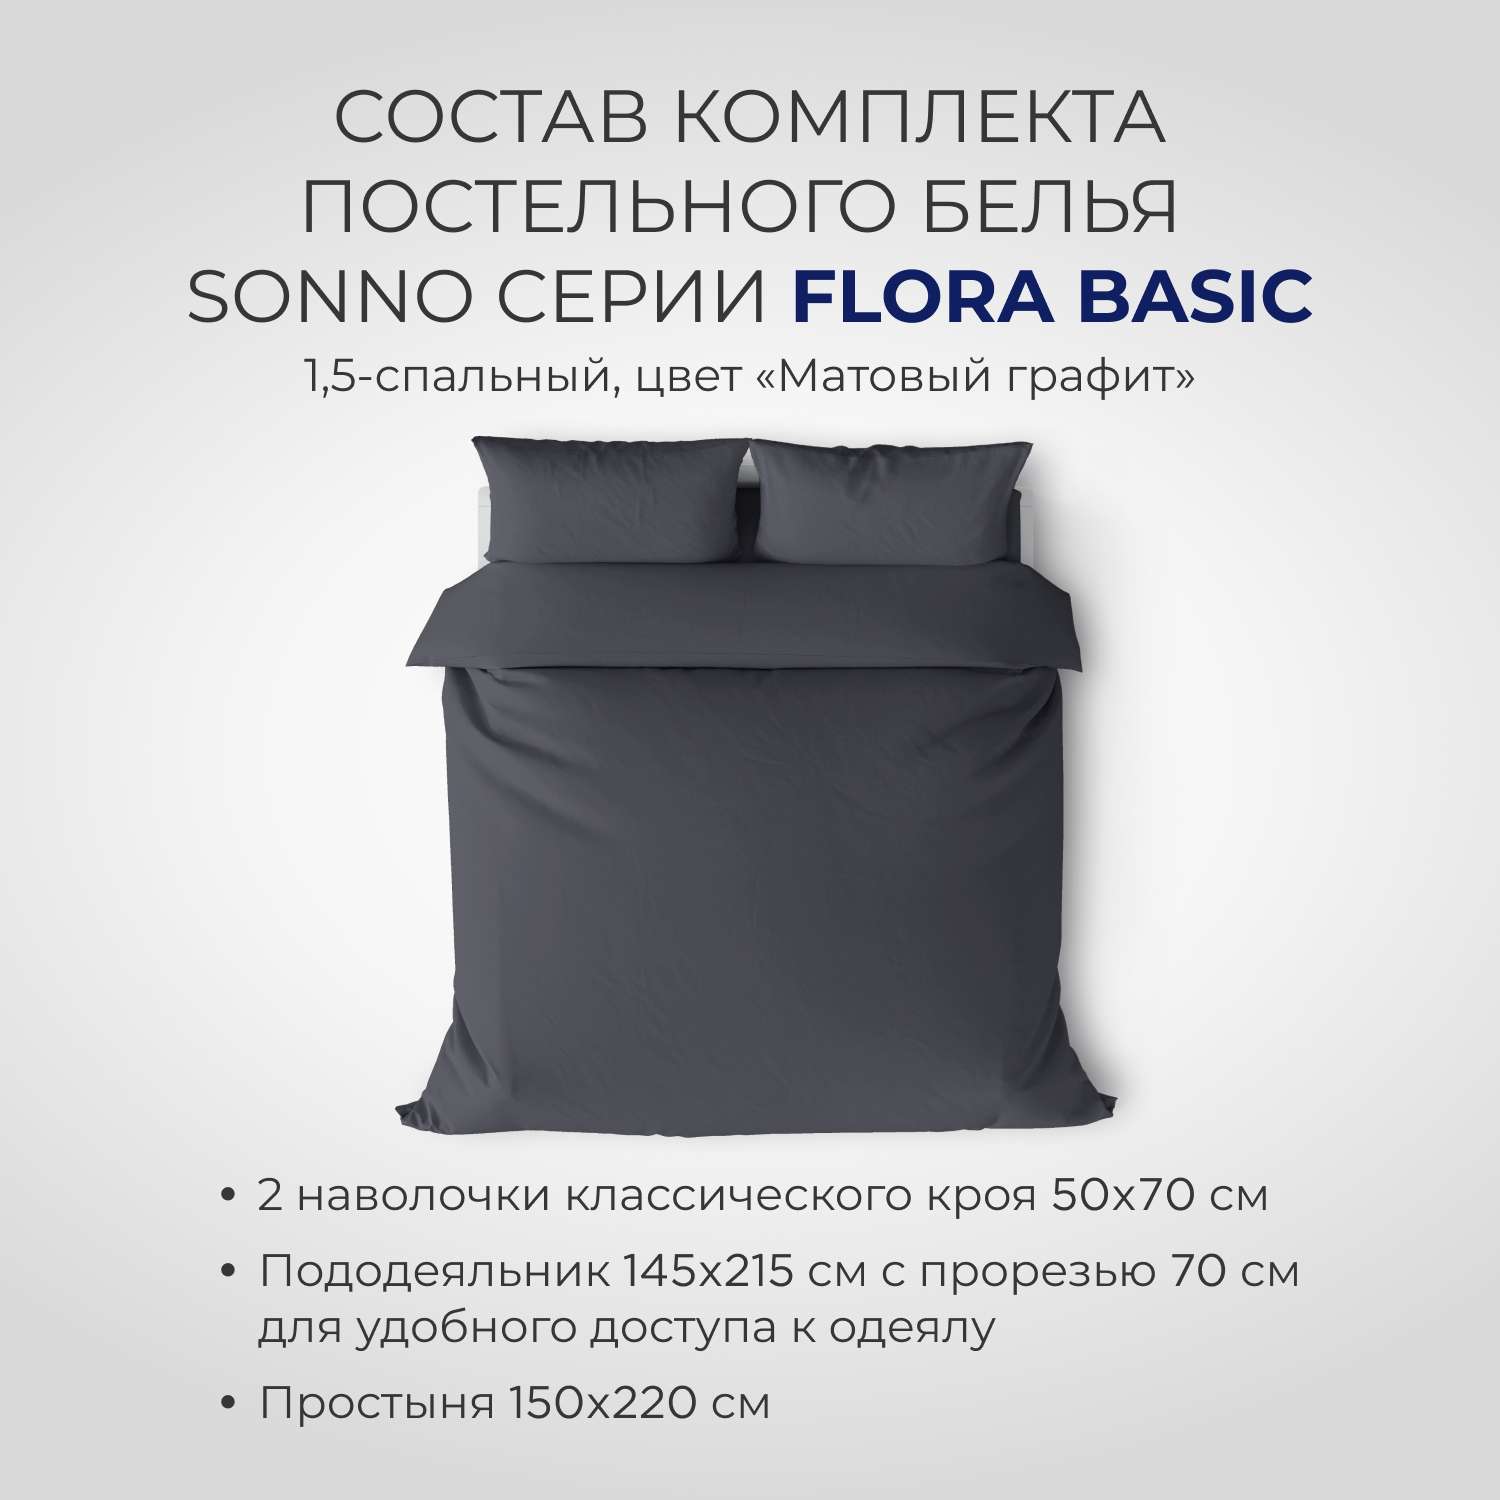 Комплект постельного белья SONNO FLORA BASIC 1.5-спальный цвет Матовый графит - фото 2